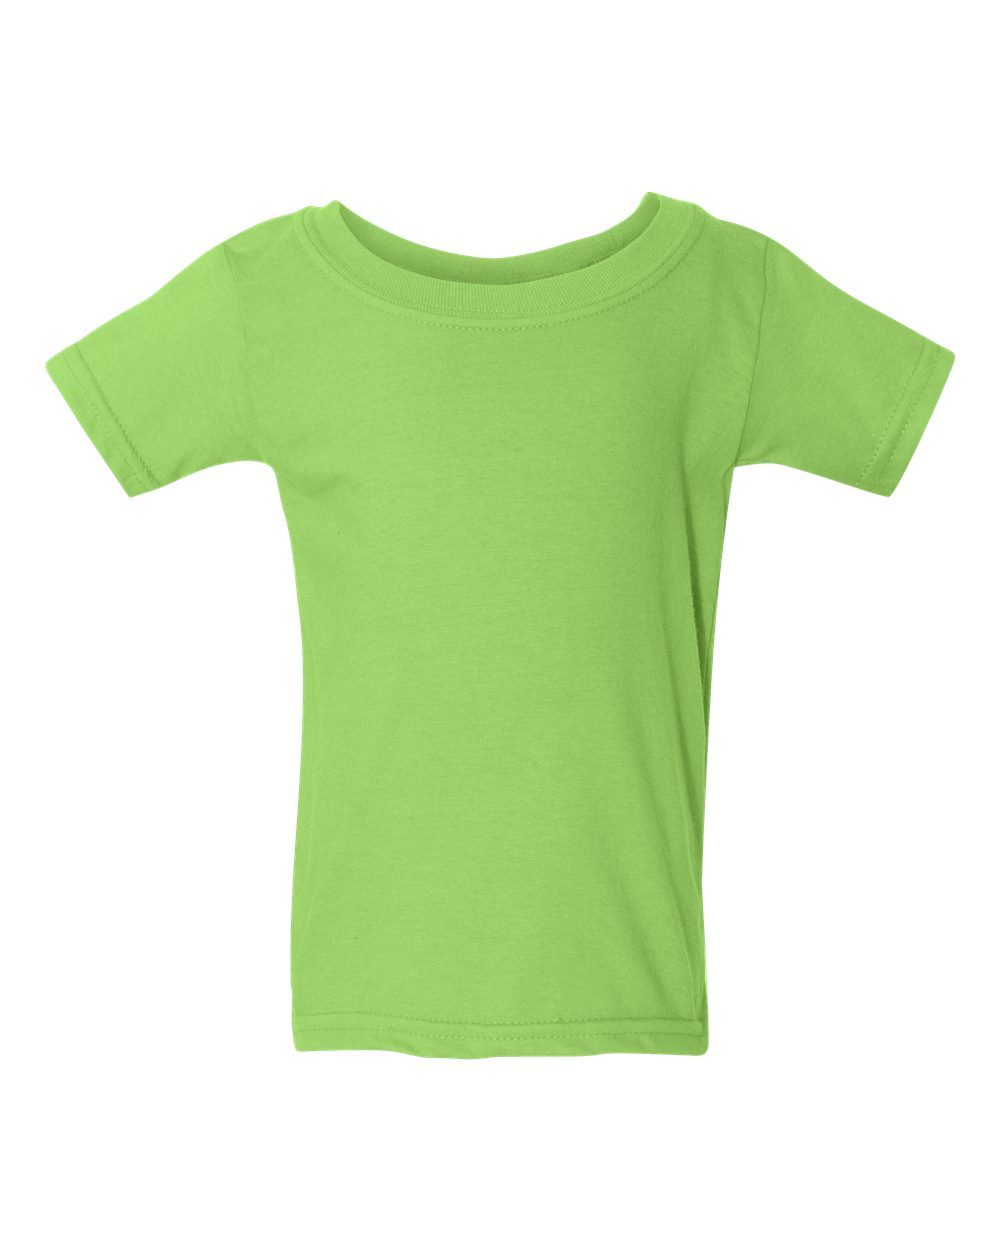 Gildan Unisex T-Shirt - white, 2t (Toddler)